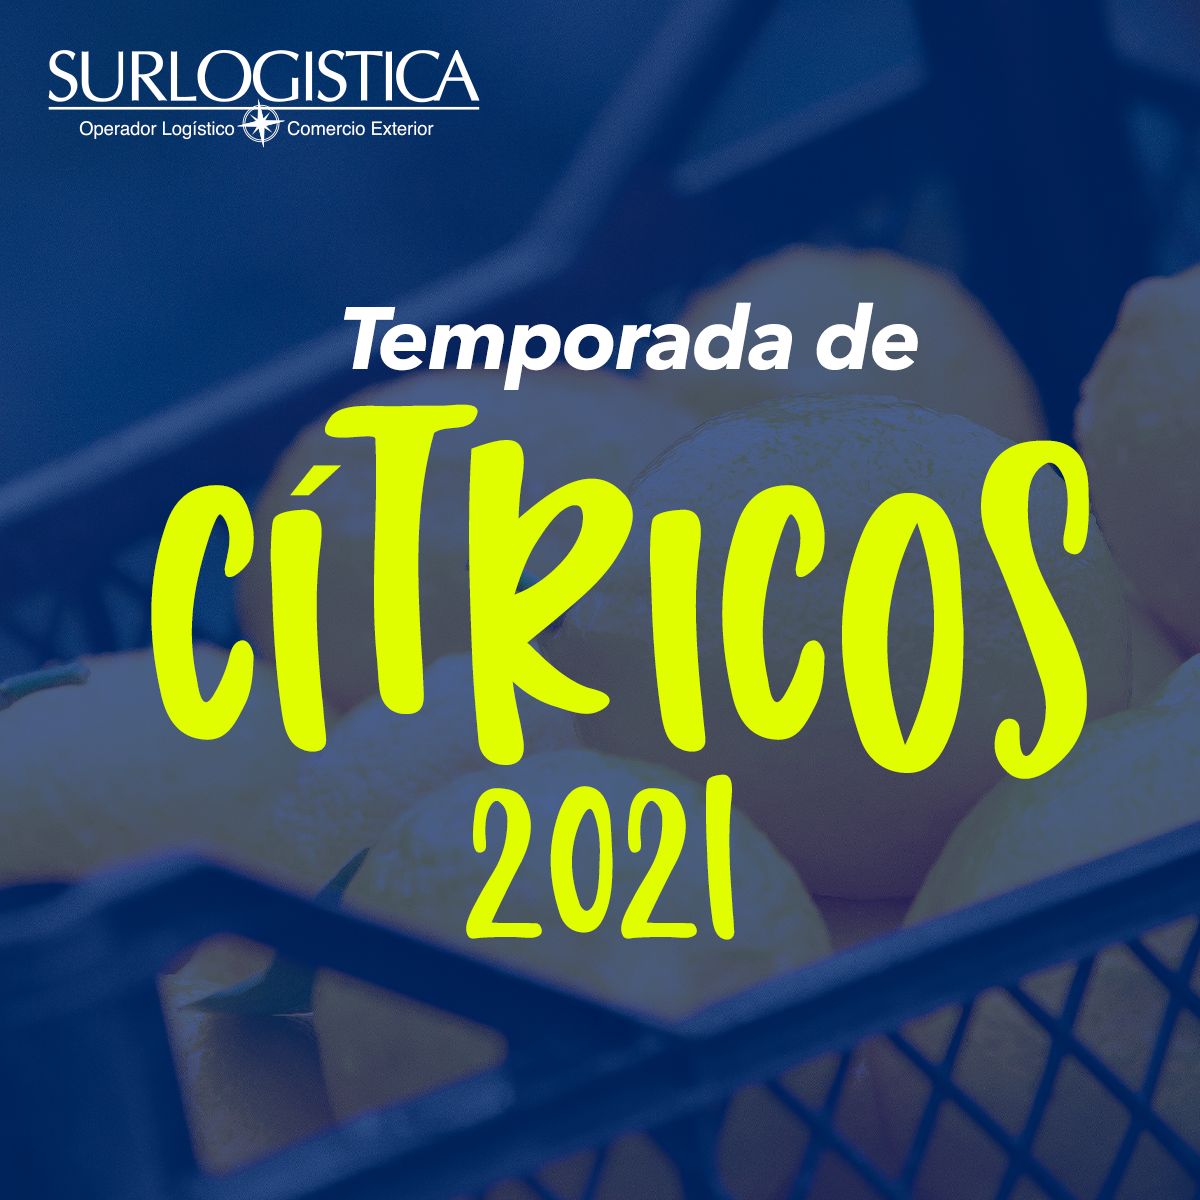 temporada-de-citricos-2021